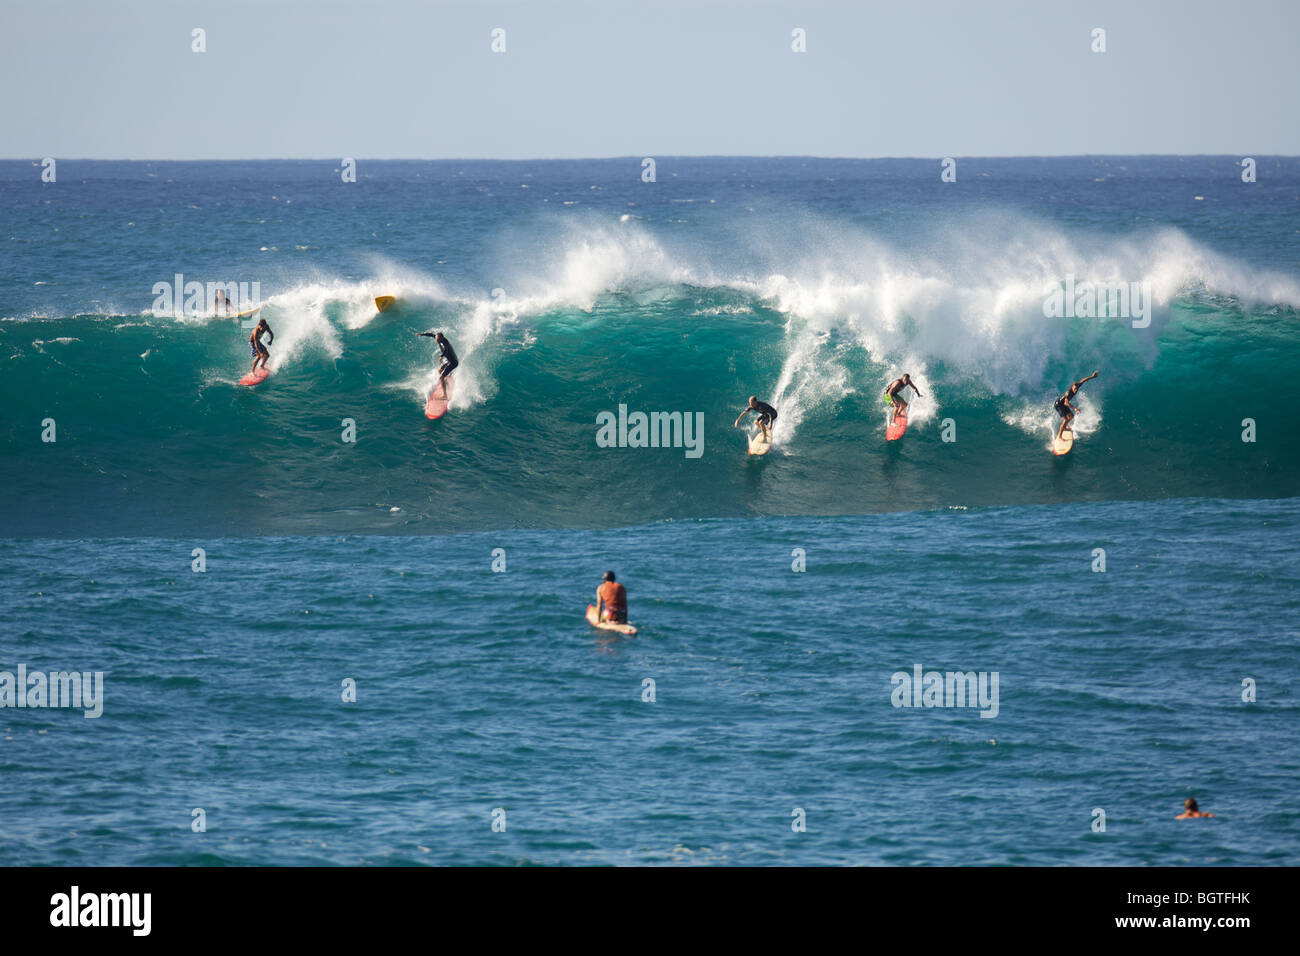 Many surfers ride a large wave at Waimea Bay, Oahu, Hawaii Stock Photo